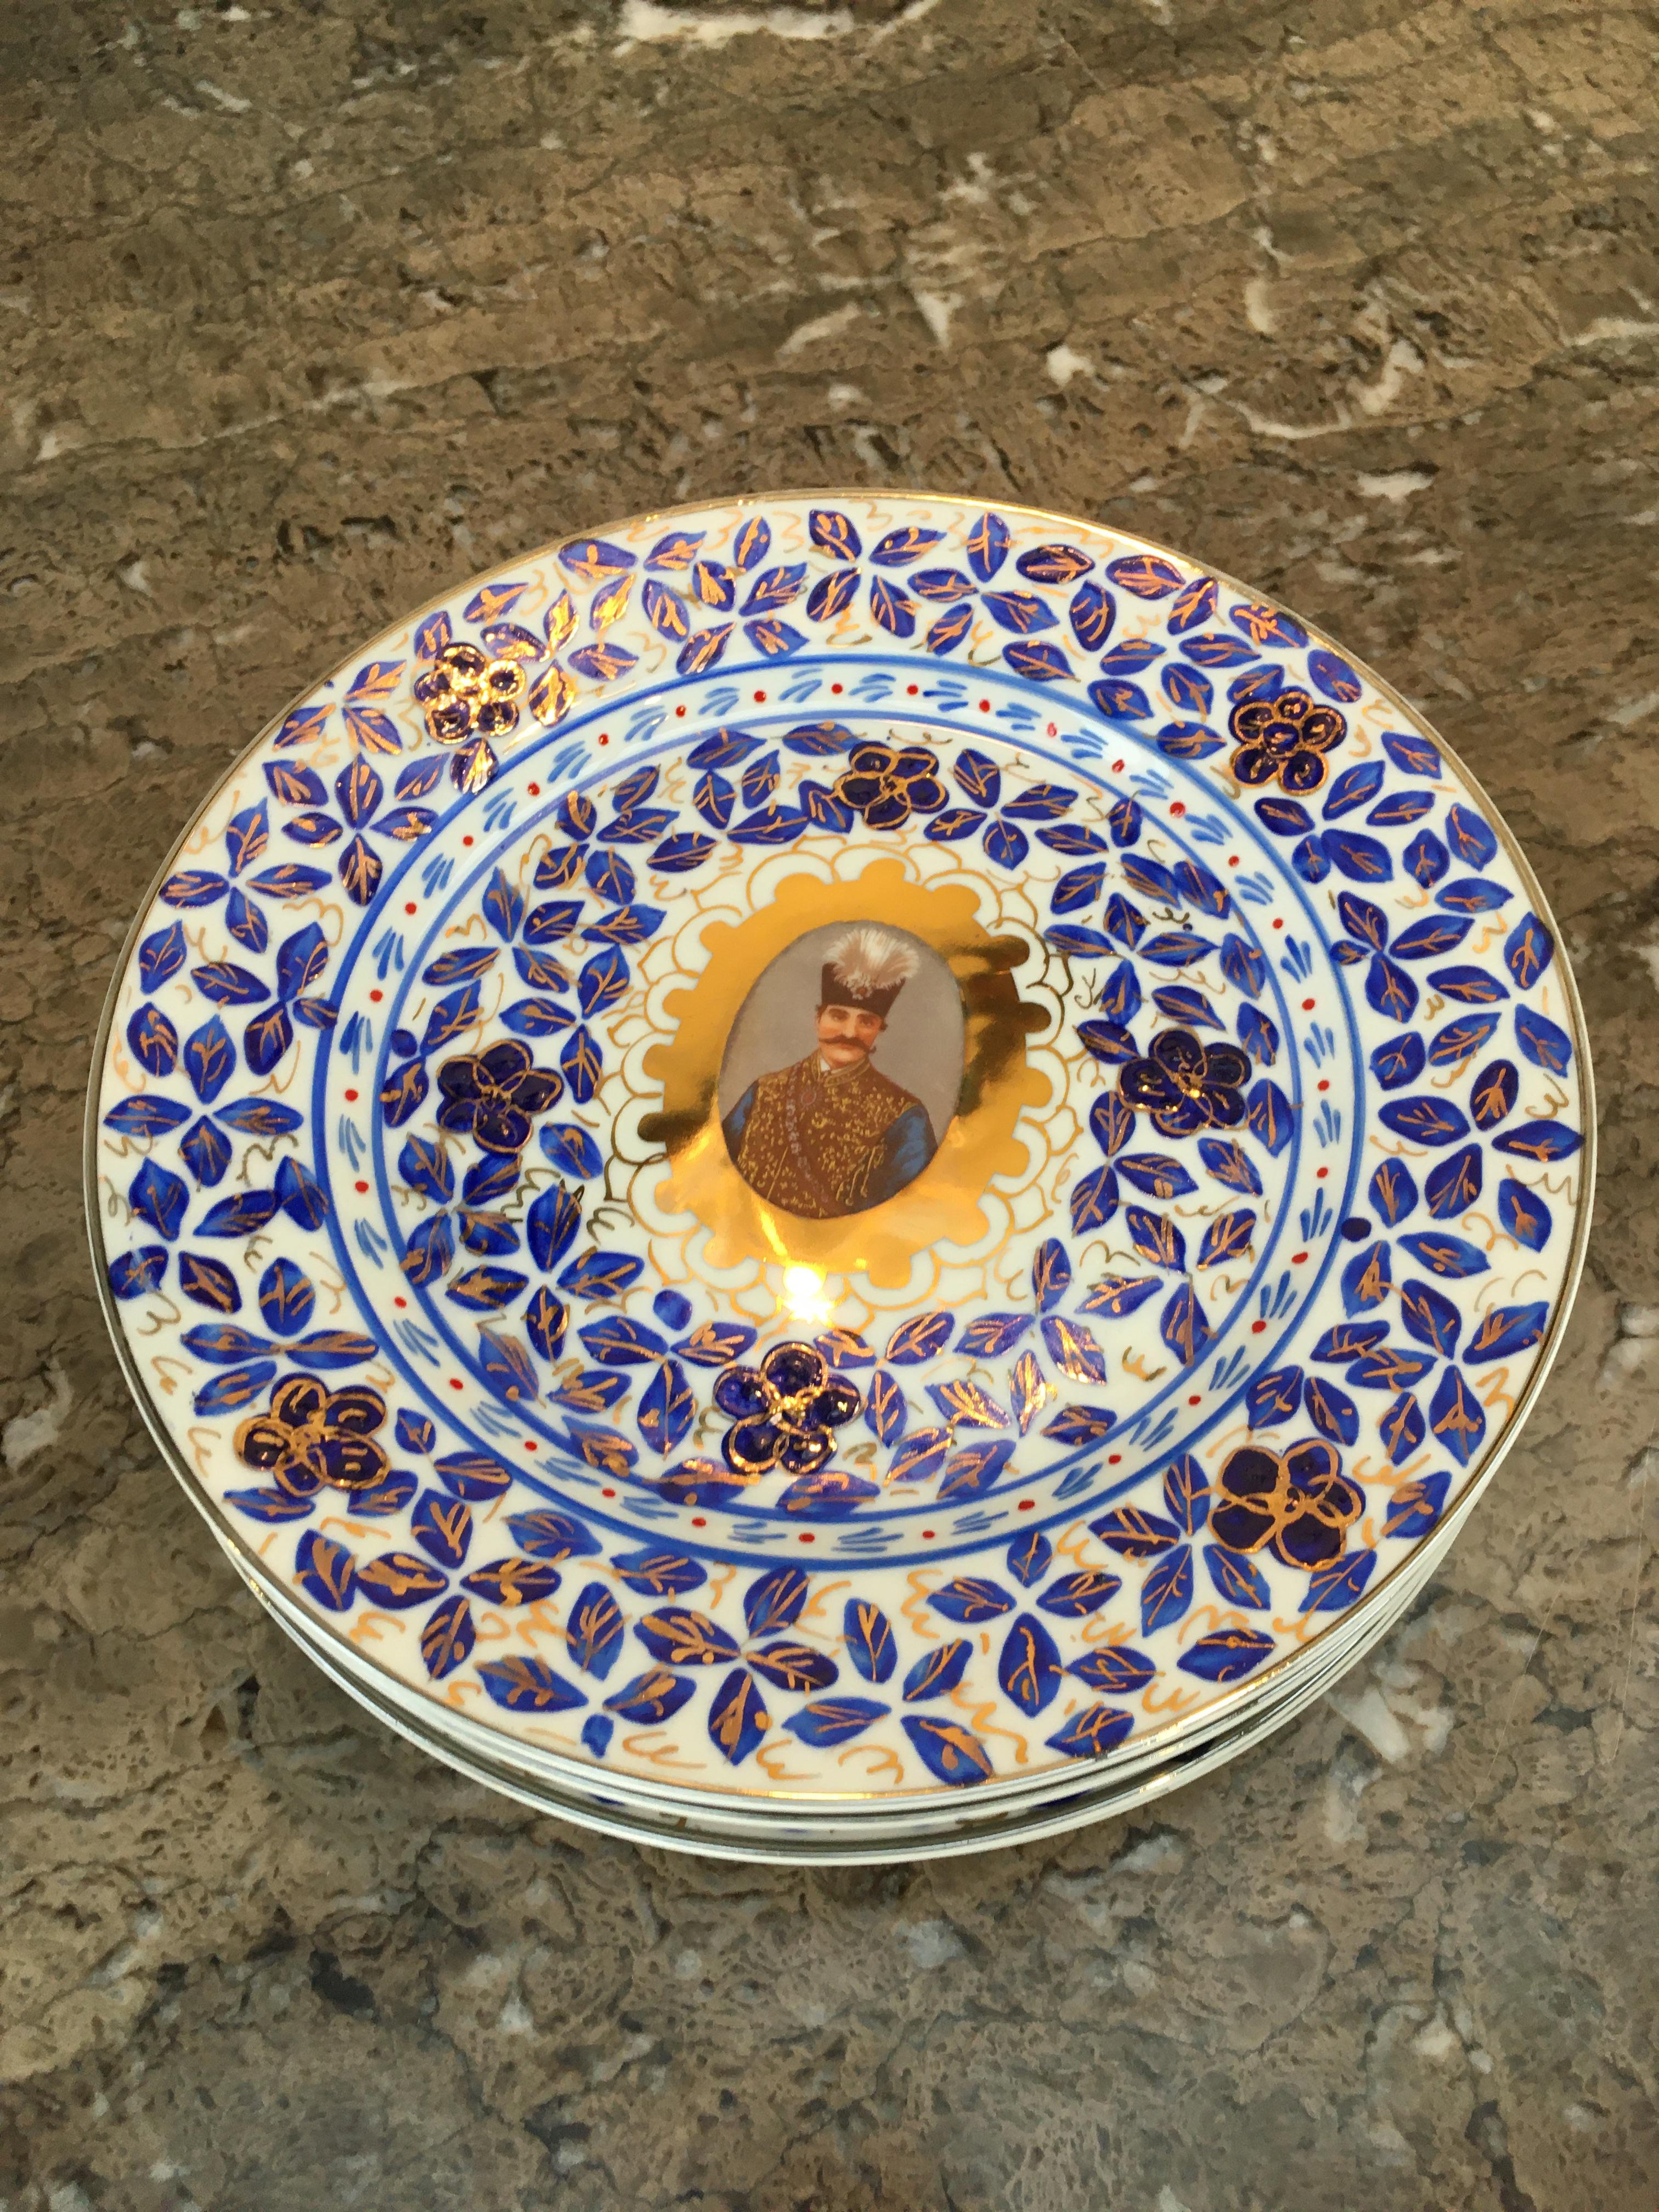 Ein Satz von sechs Tellern mit Gedenkporträts von Naser al-Din Schah Qajar. Das Ganze ist von Hand mit einem traditionellen Muster aus Blättern, Blumen und Vögeln in Kobalt überglasiert und anschließend paketvergoldet. 

Dieses seltene Porträtset